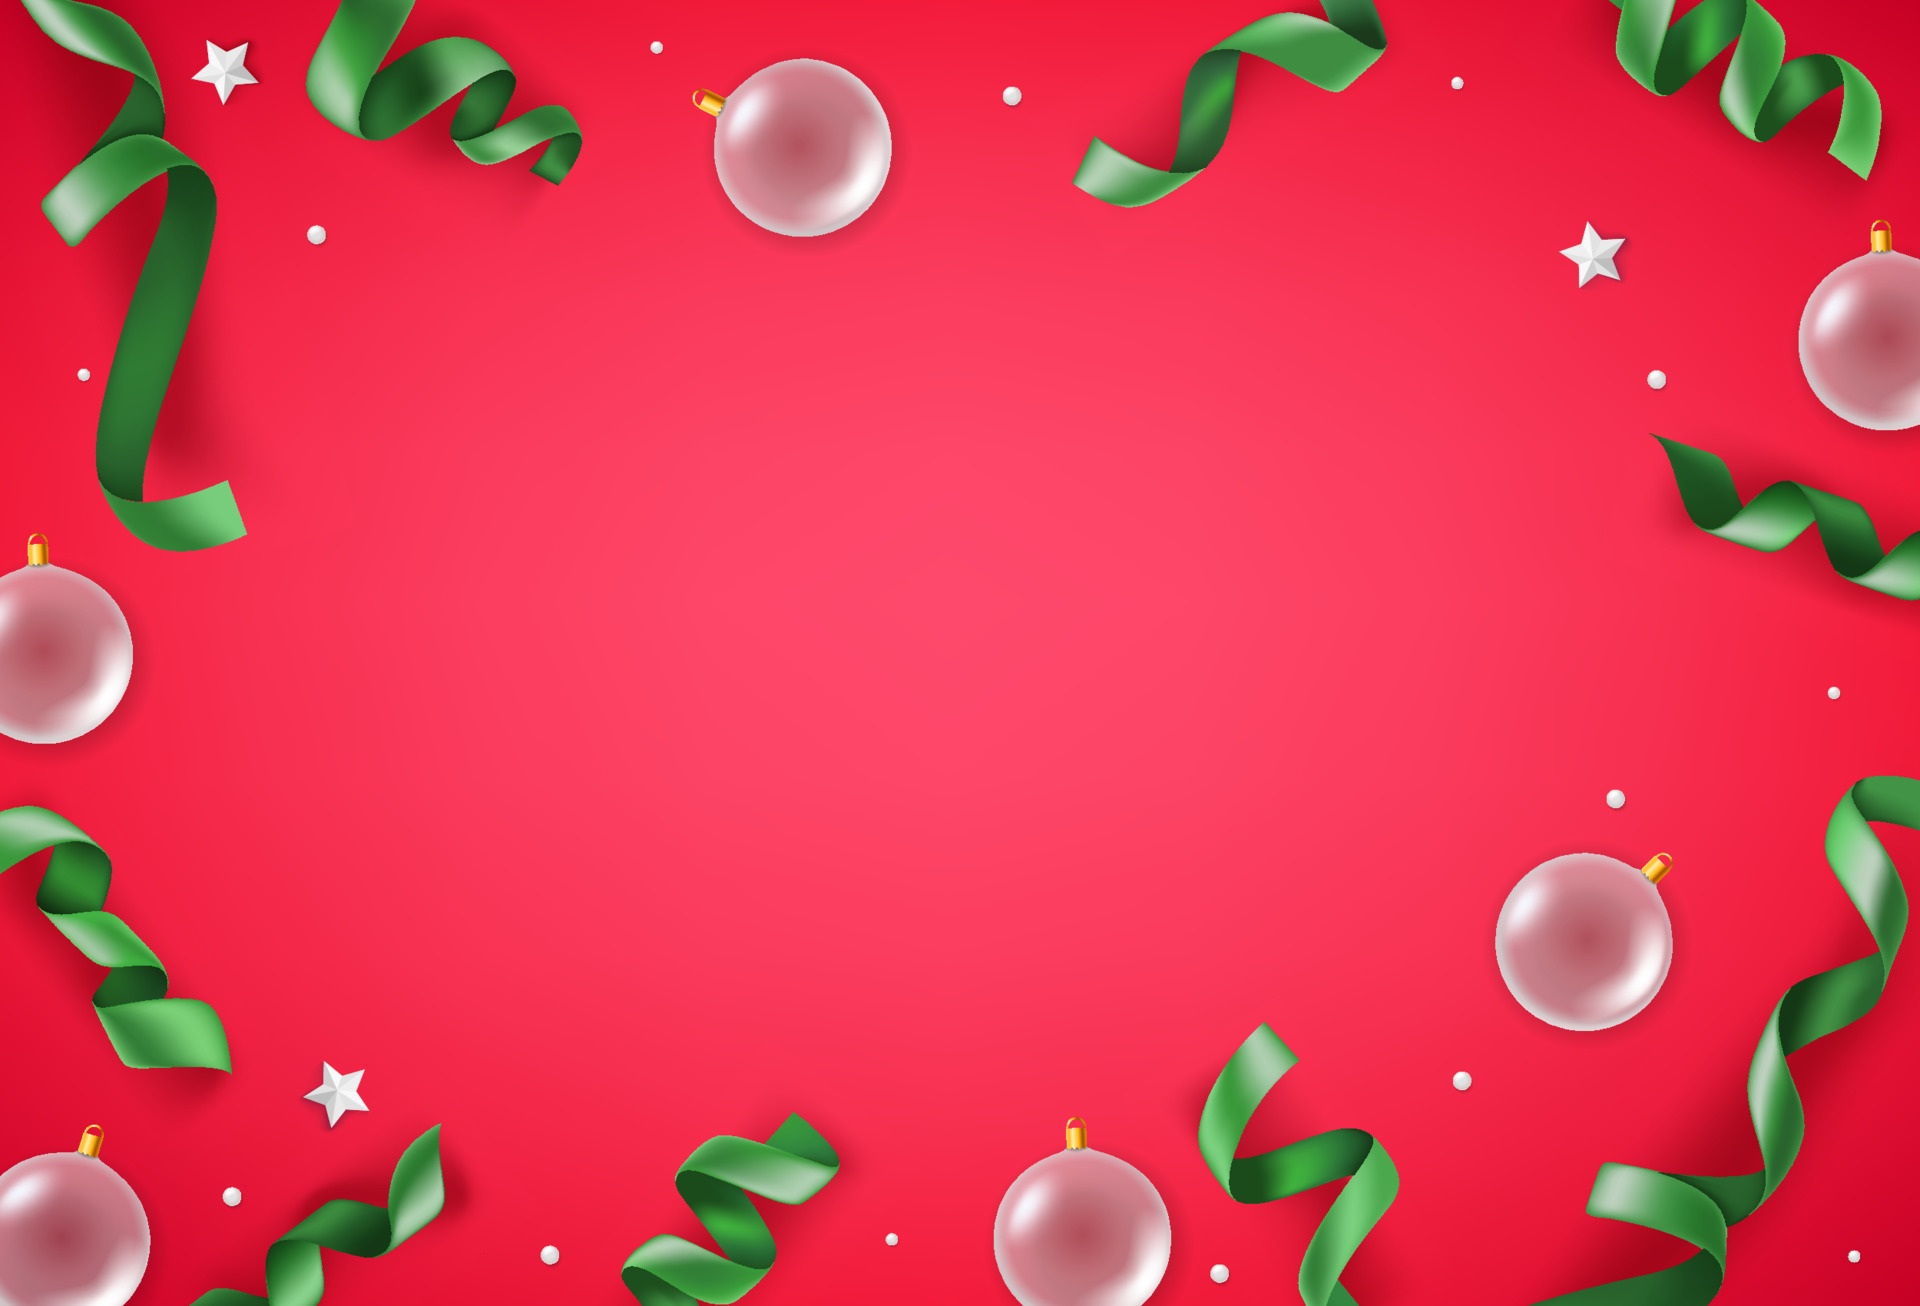 Giáng sinh nền đỏ với nơ xanh lá cây: Hãy đón chào Giáng Sinh đầy ấm áp với hình nền đỏ nhộn nhịp và nơ xanh lá cây đầy ngập sắc màu. Nhấn vào hình ảnh để thấy được vẻ đẹp lắng đọng mà màu sắc đem lại cho không gian Giáng Sinh của bạn.